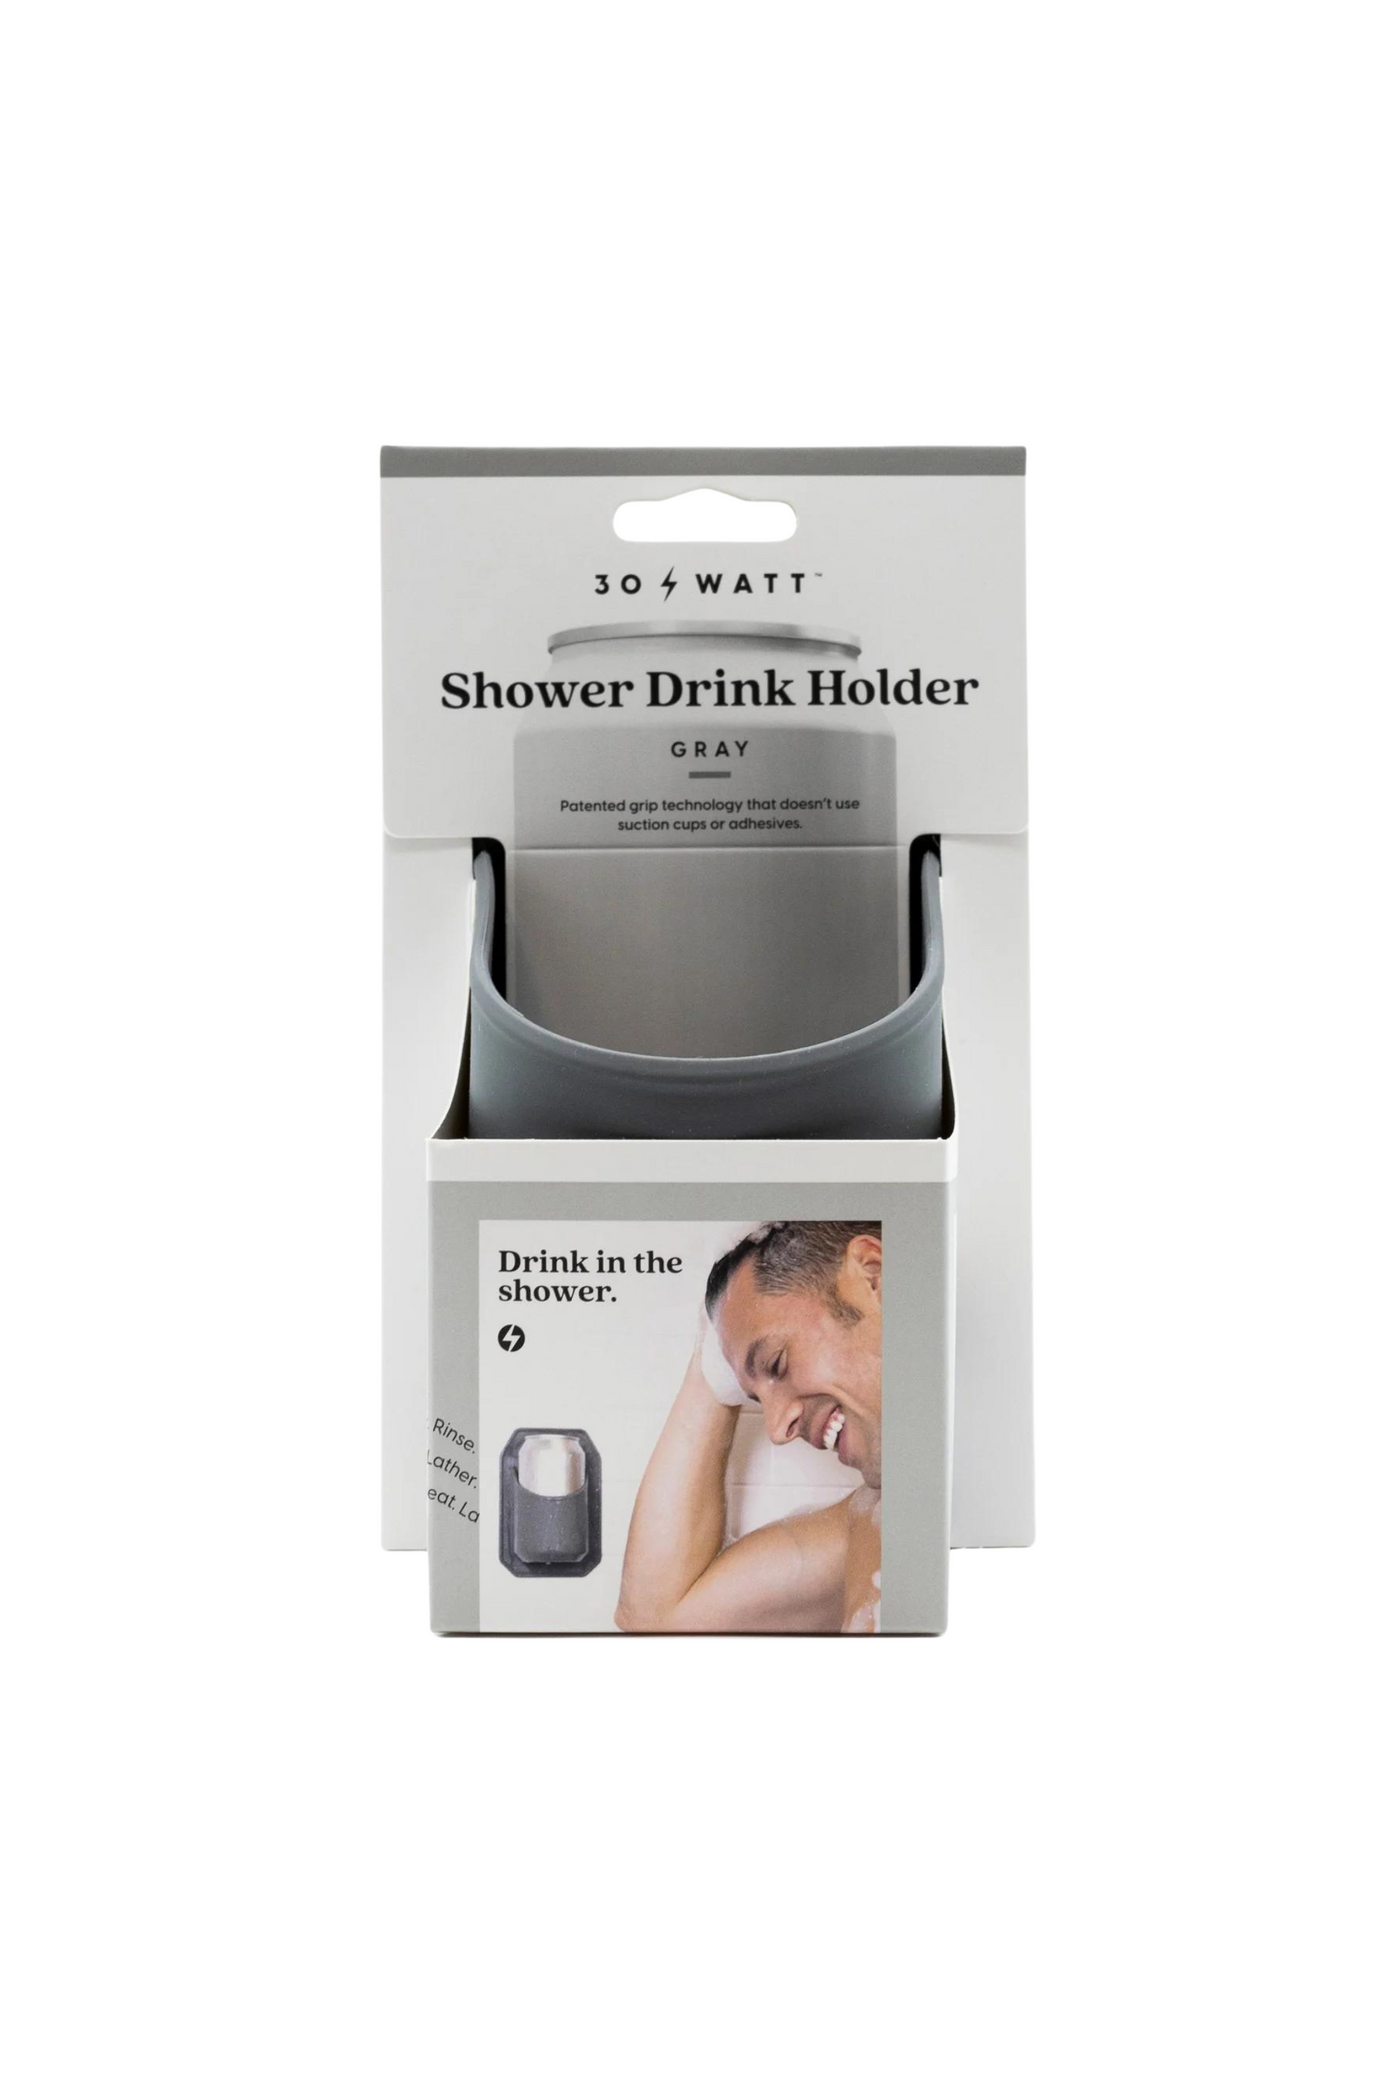 Sudski Shower Drink Holder